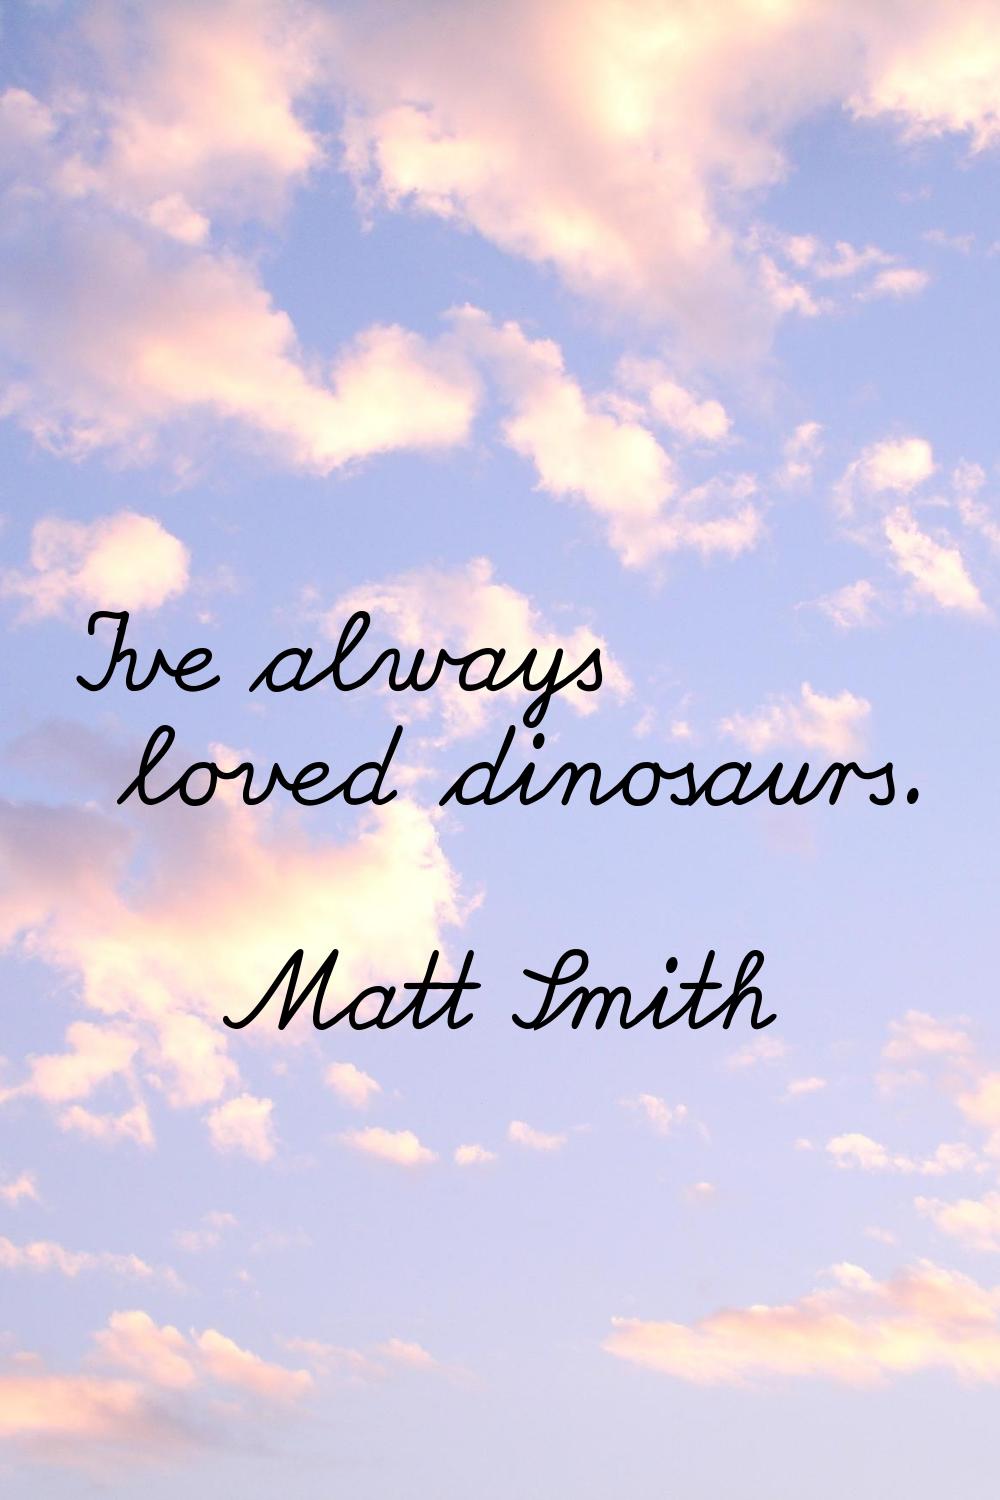 I've always loved dinosaurs.